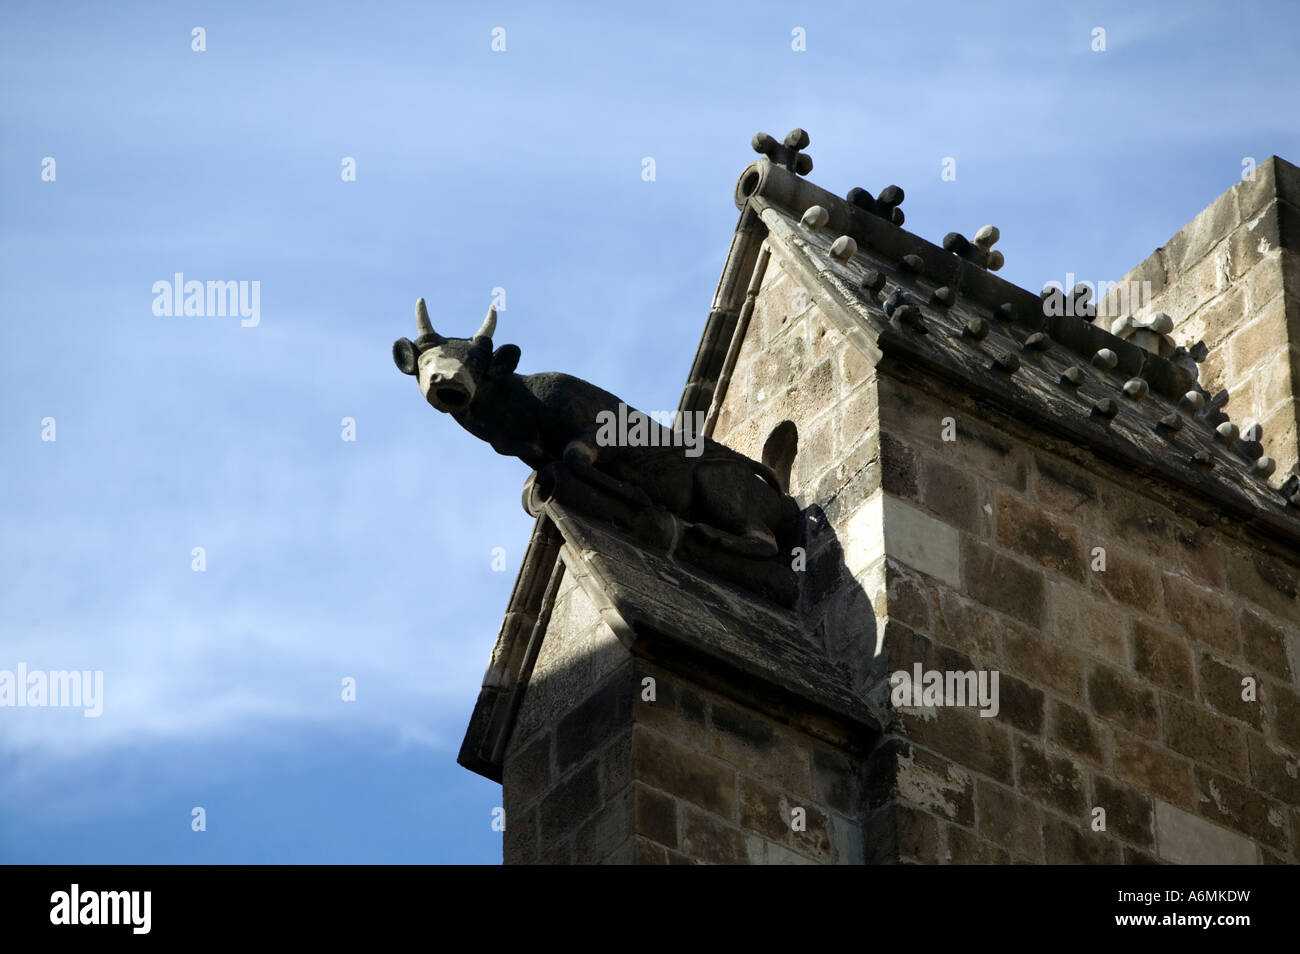 La scultura di animali con corna sul tetto della cattedrale di Barcellona Carrer de la Pietat El Barri Gotic Barrio Gotico Barcellona Spagna Foto Stock